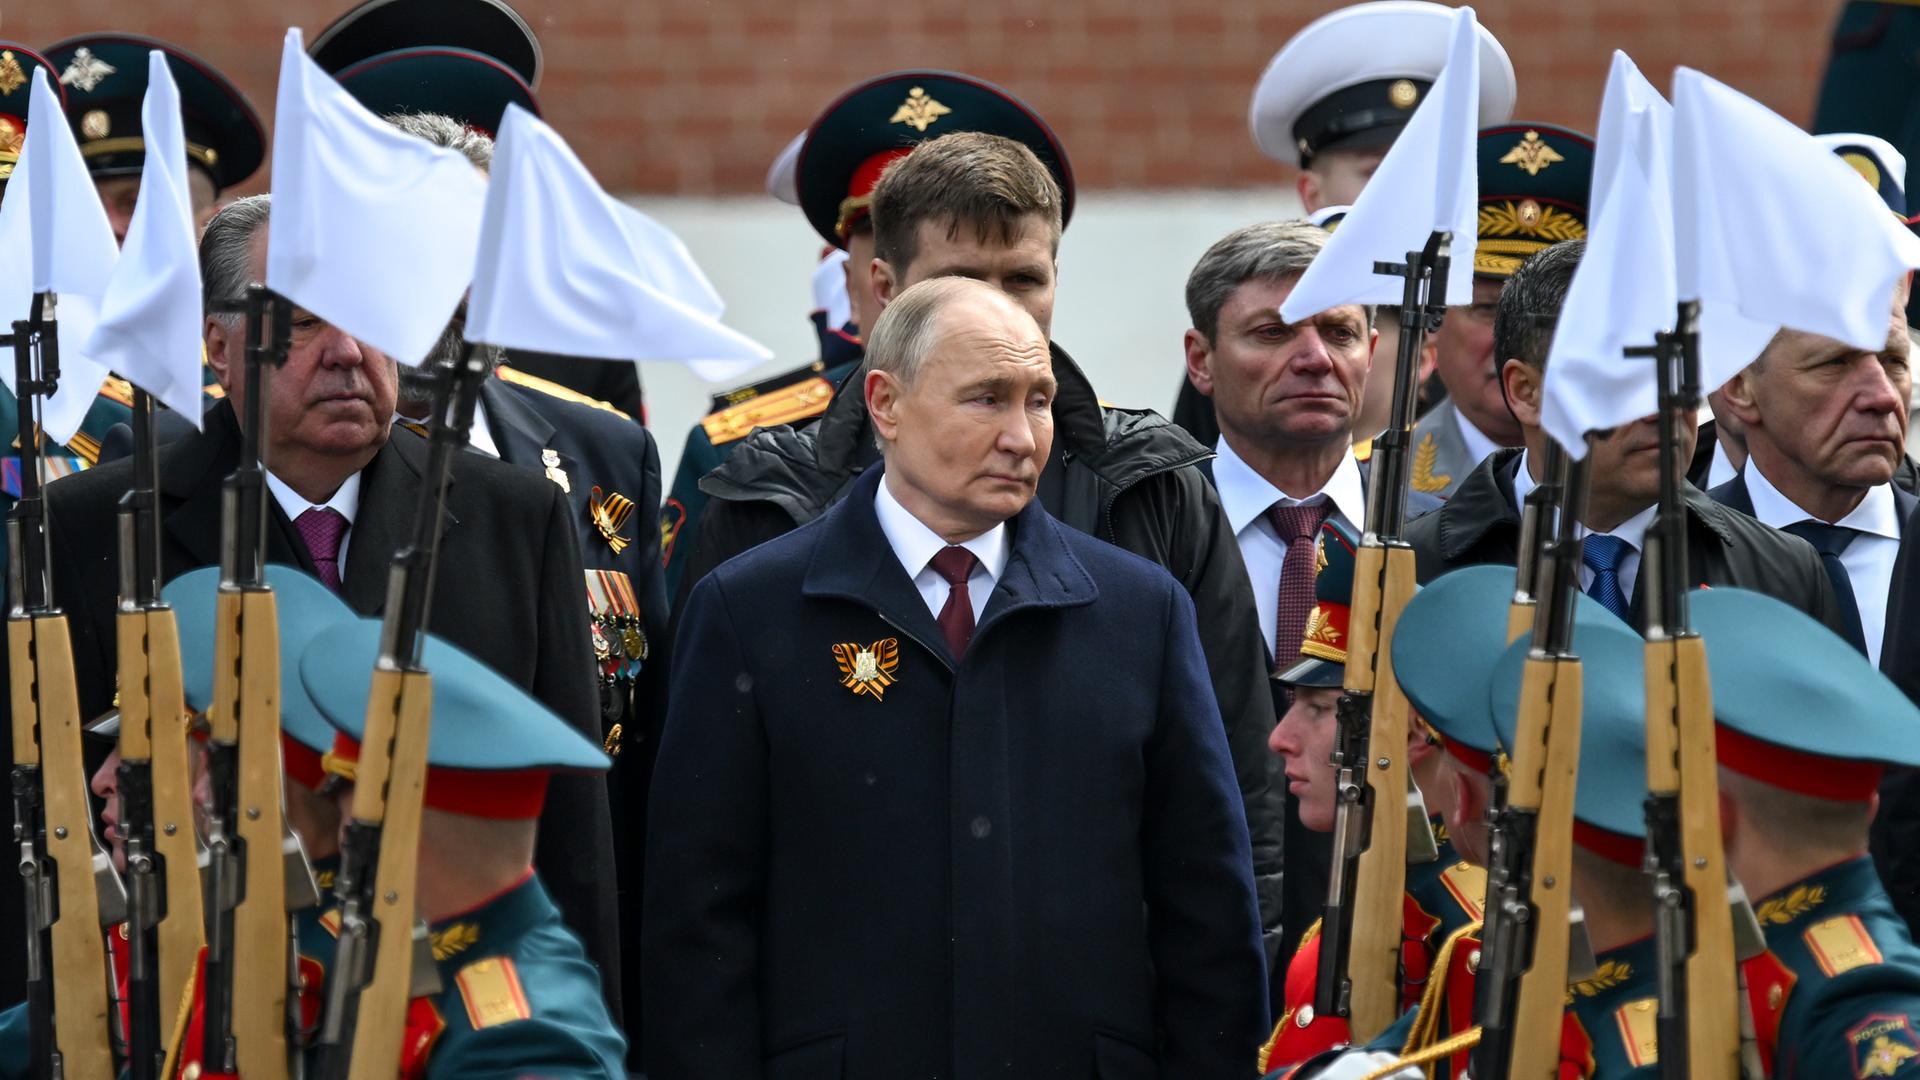 Russlands Präsident Putin steht während einer Parade zwischen Soldaten in Uniform.